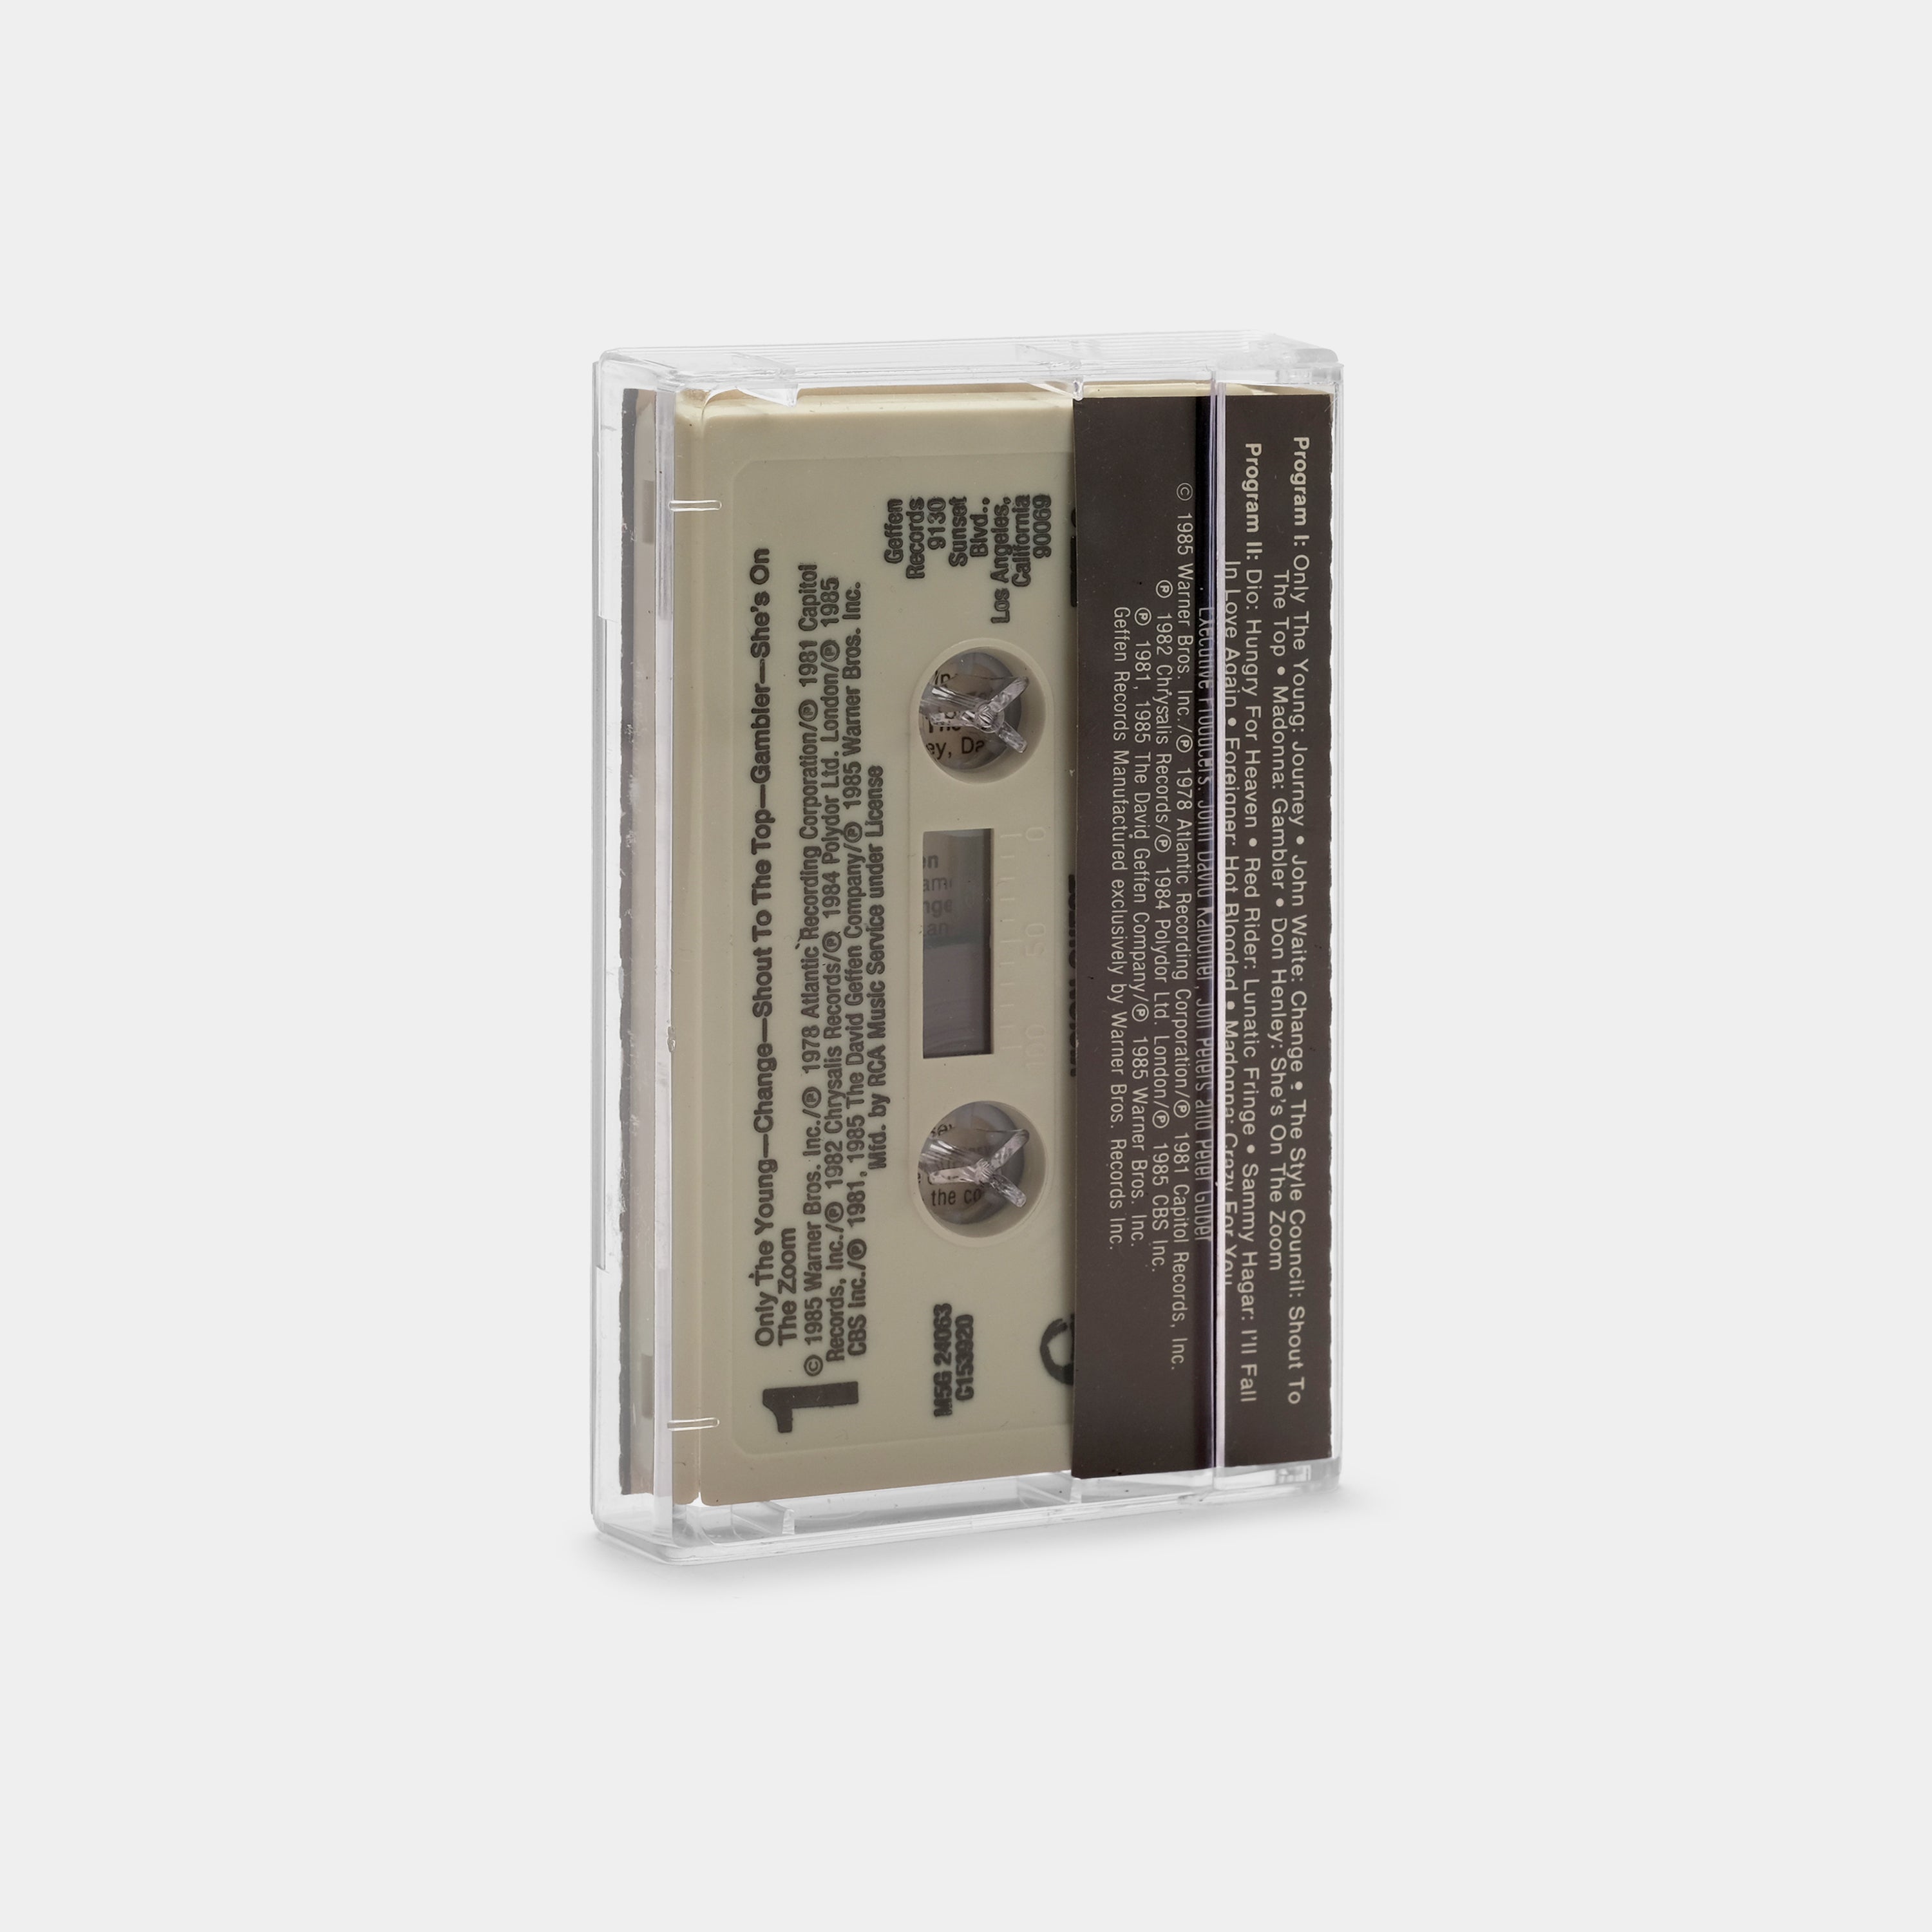 Vision Quest (Original Motion Picture Soundtrack) Cassette Tape